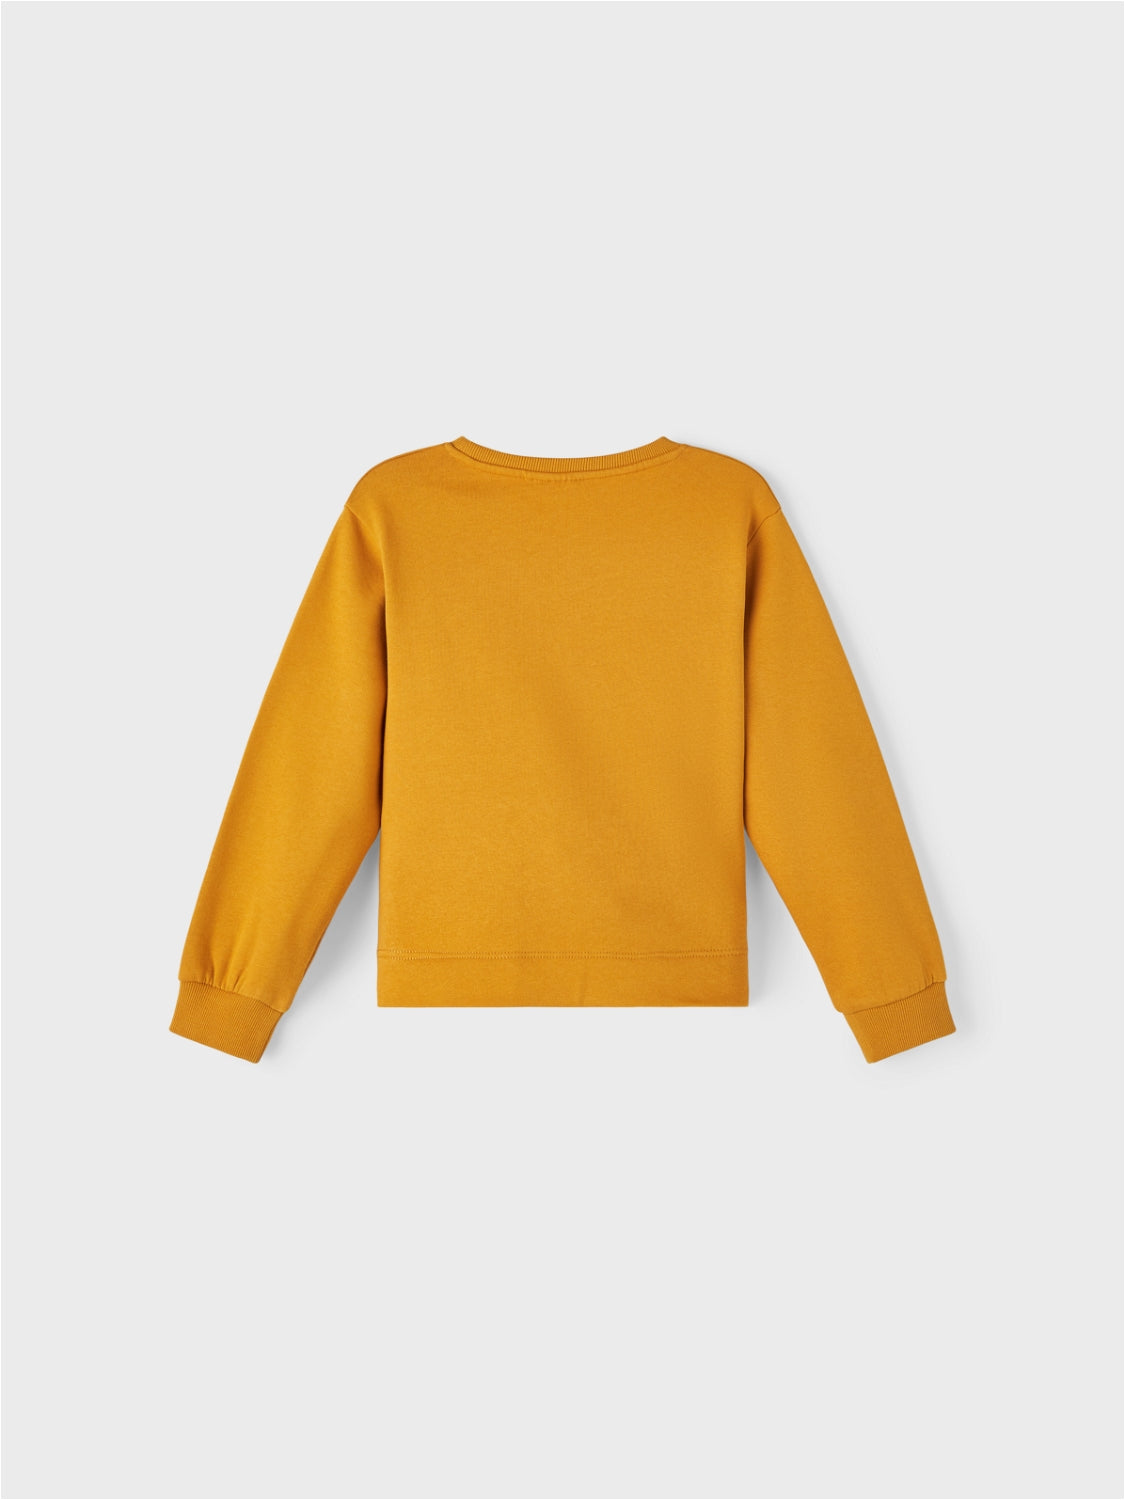 NKFOCAREN Sweatshirts - Inca Gold